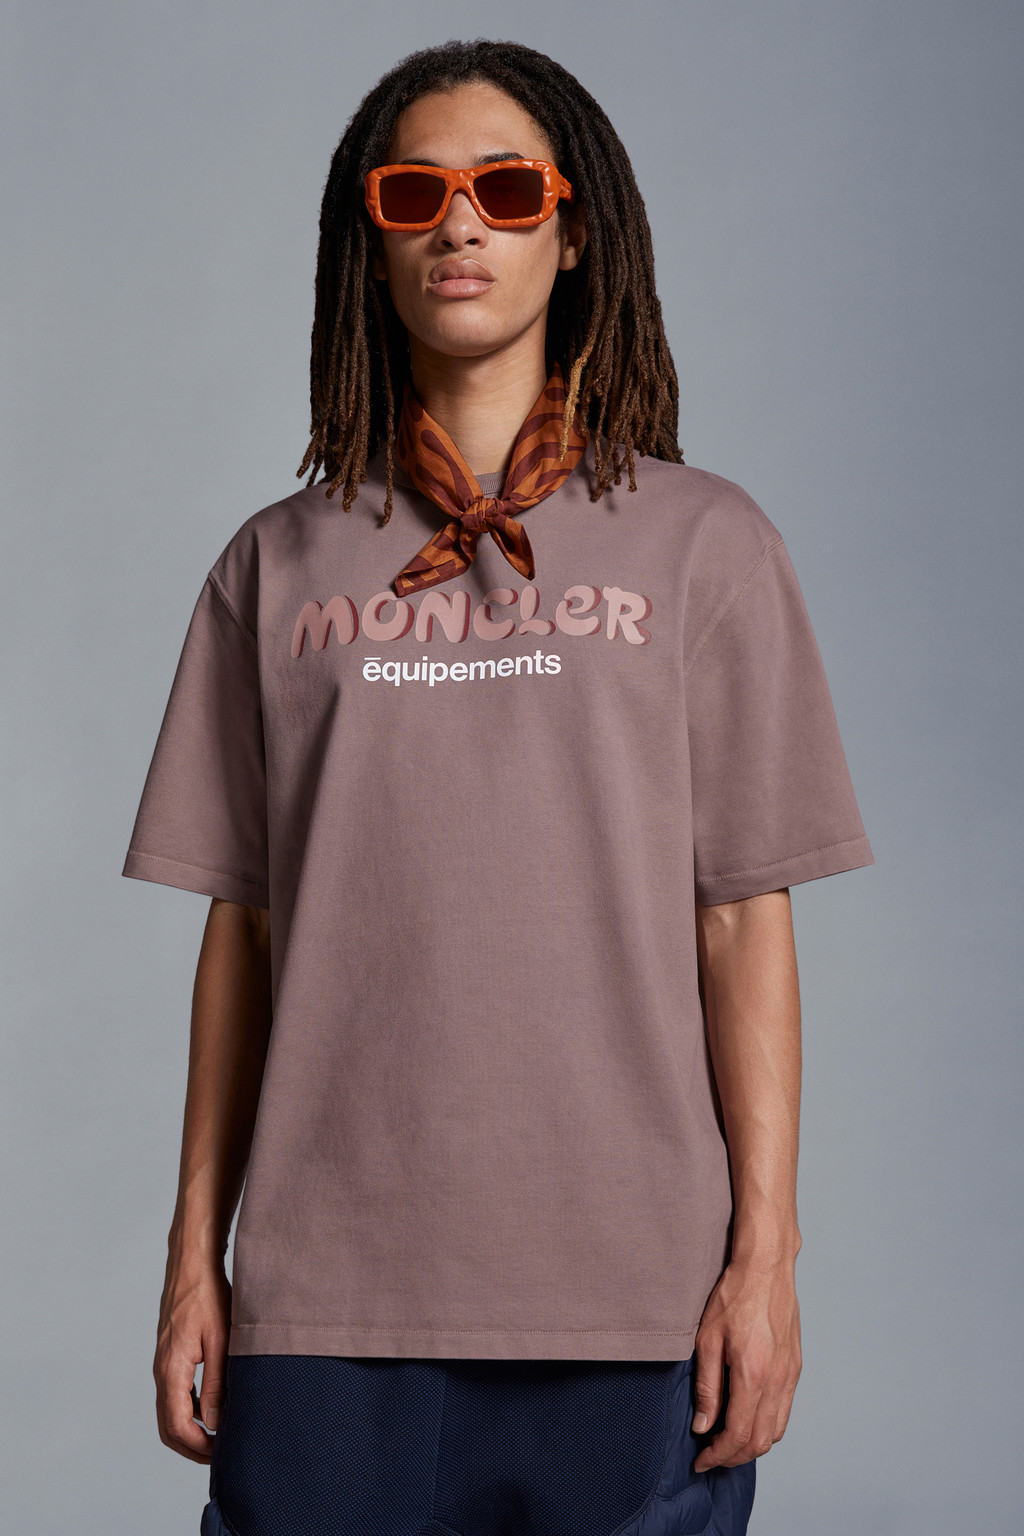 ライトピンク Tシャツ : Moncler x Salehe Bembury 向けの Genius ...